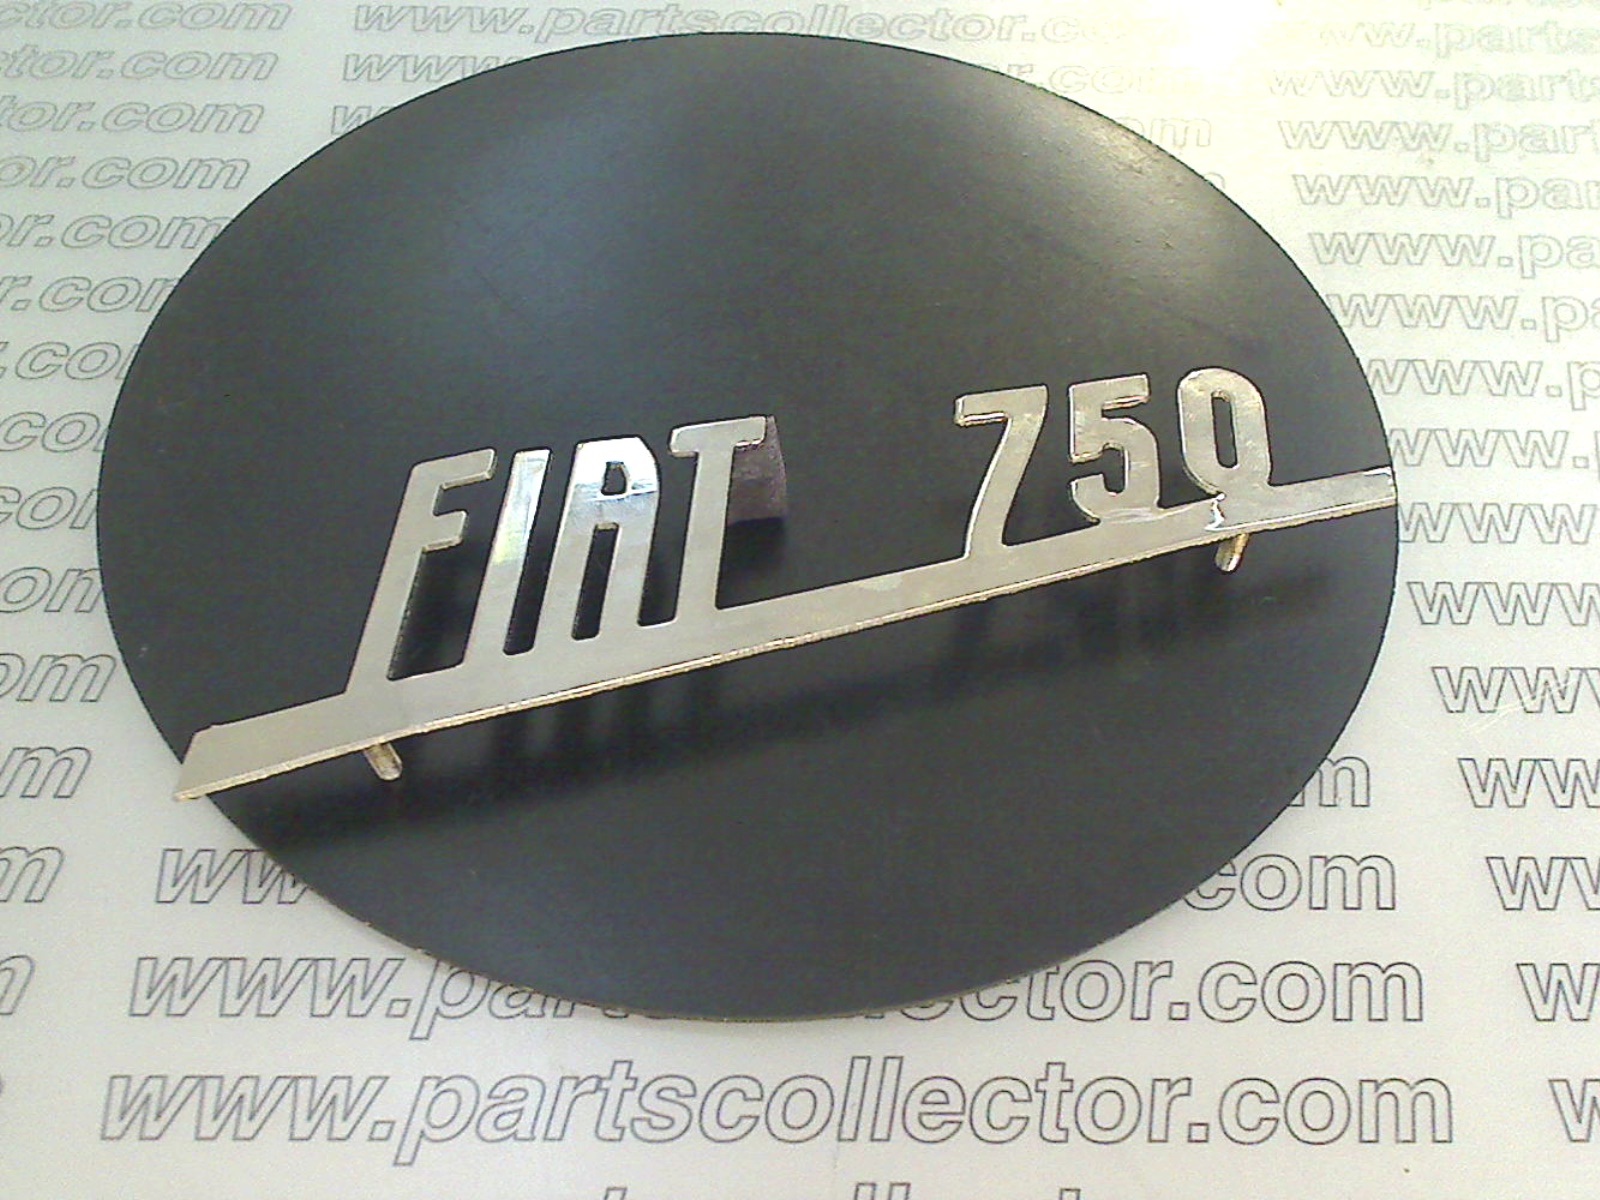 FIAT 750 EMBLEM